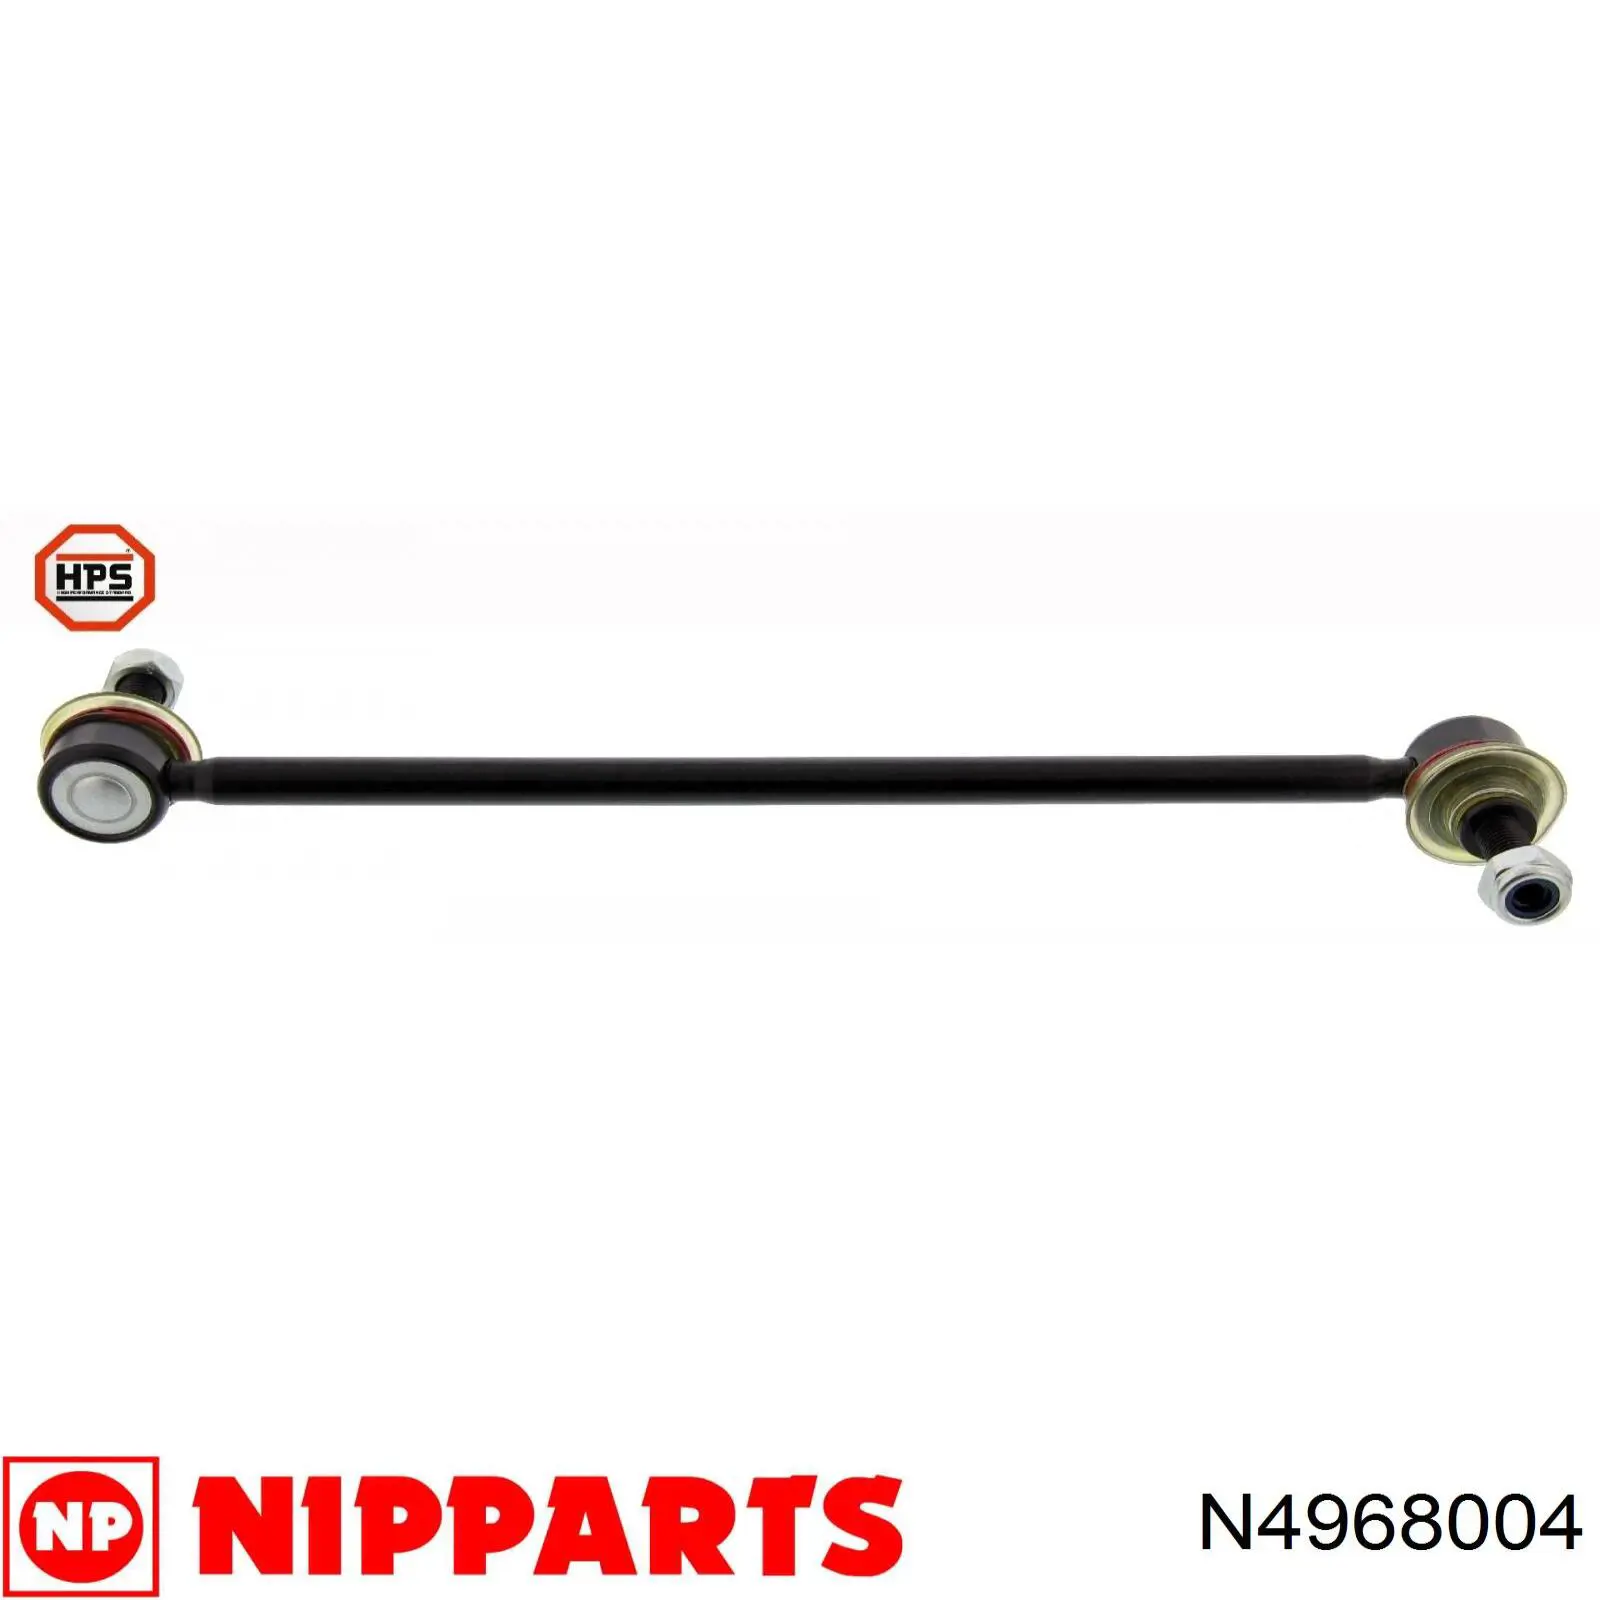 N4968004 Nipparts soporte de barra estabilizadora delantera